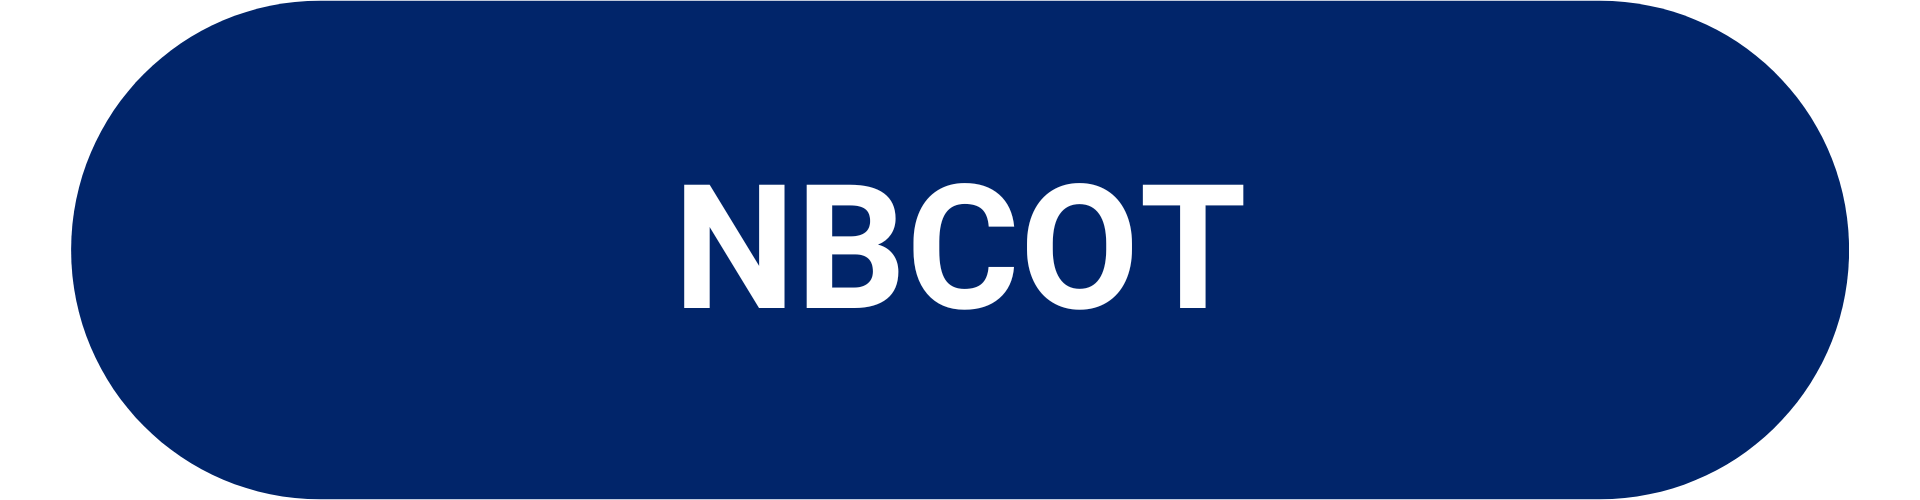 NBCOT Link